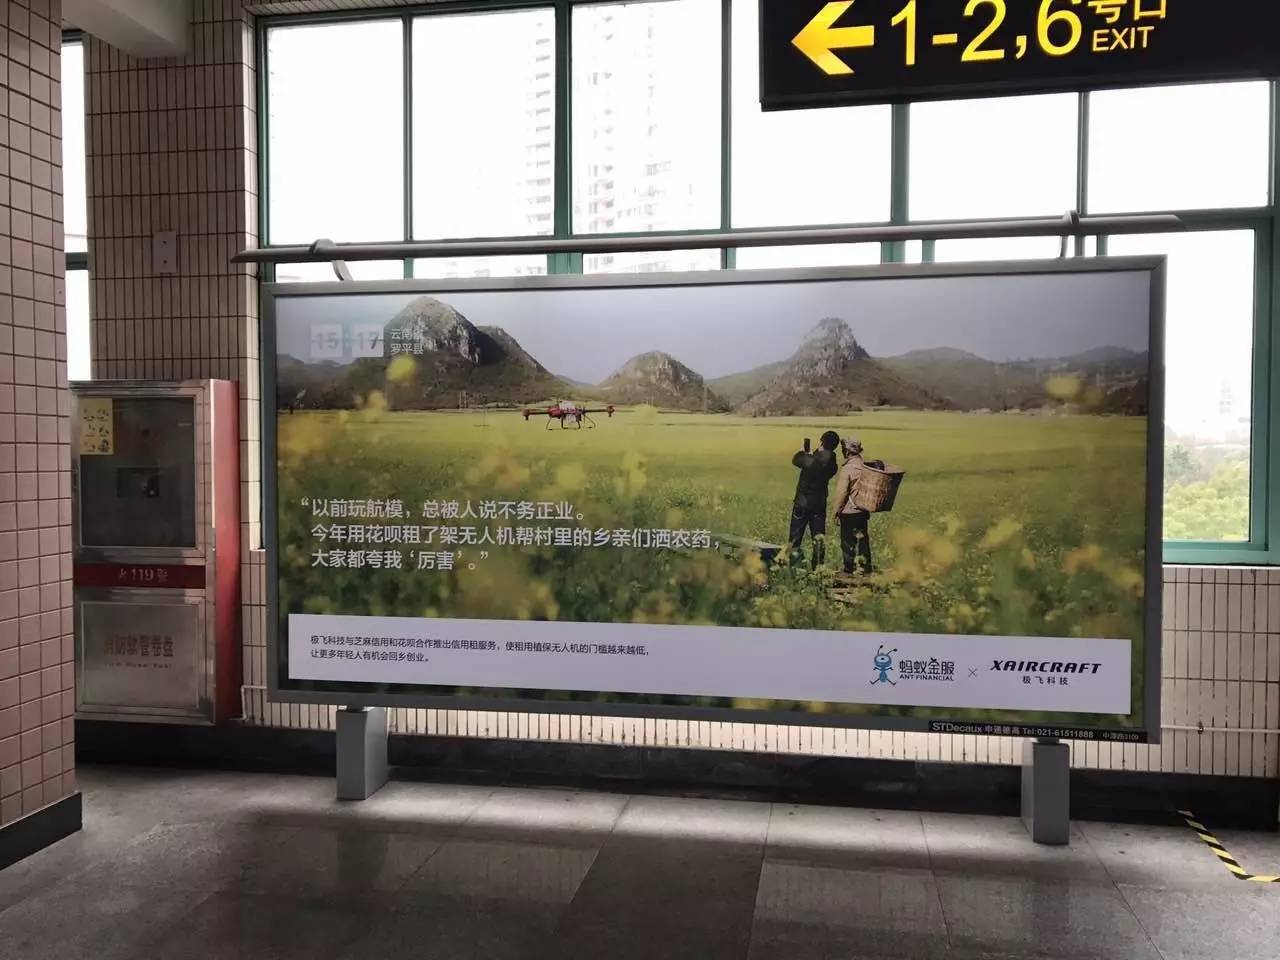 花呗地铁广告图片